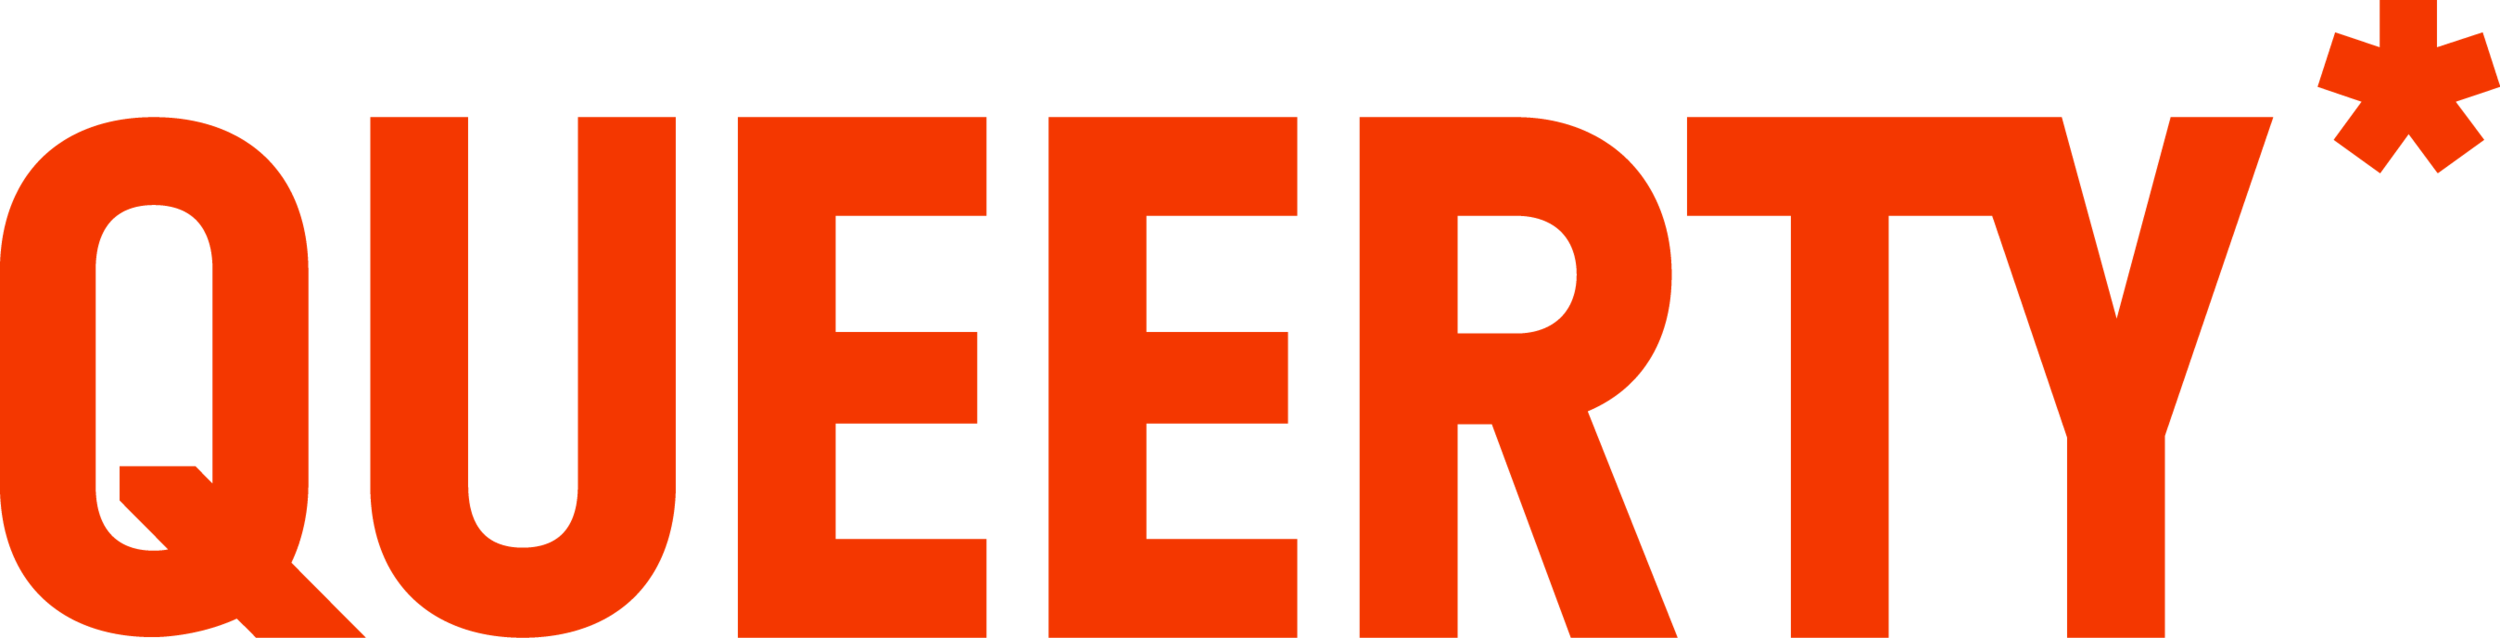 queerty-logo-no-tagline.png